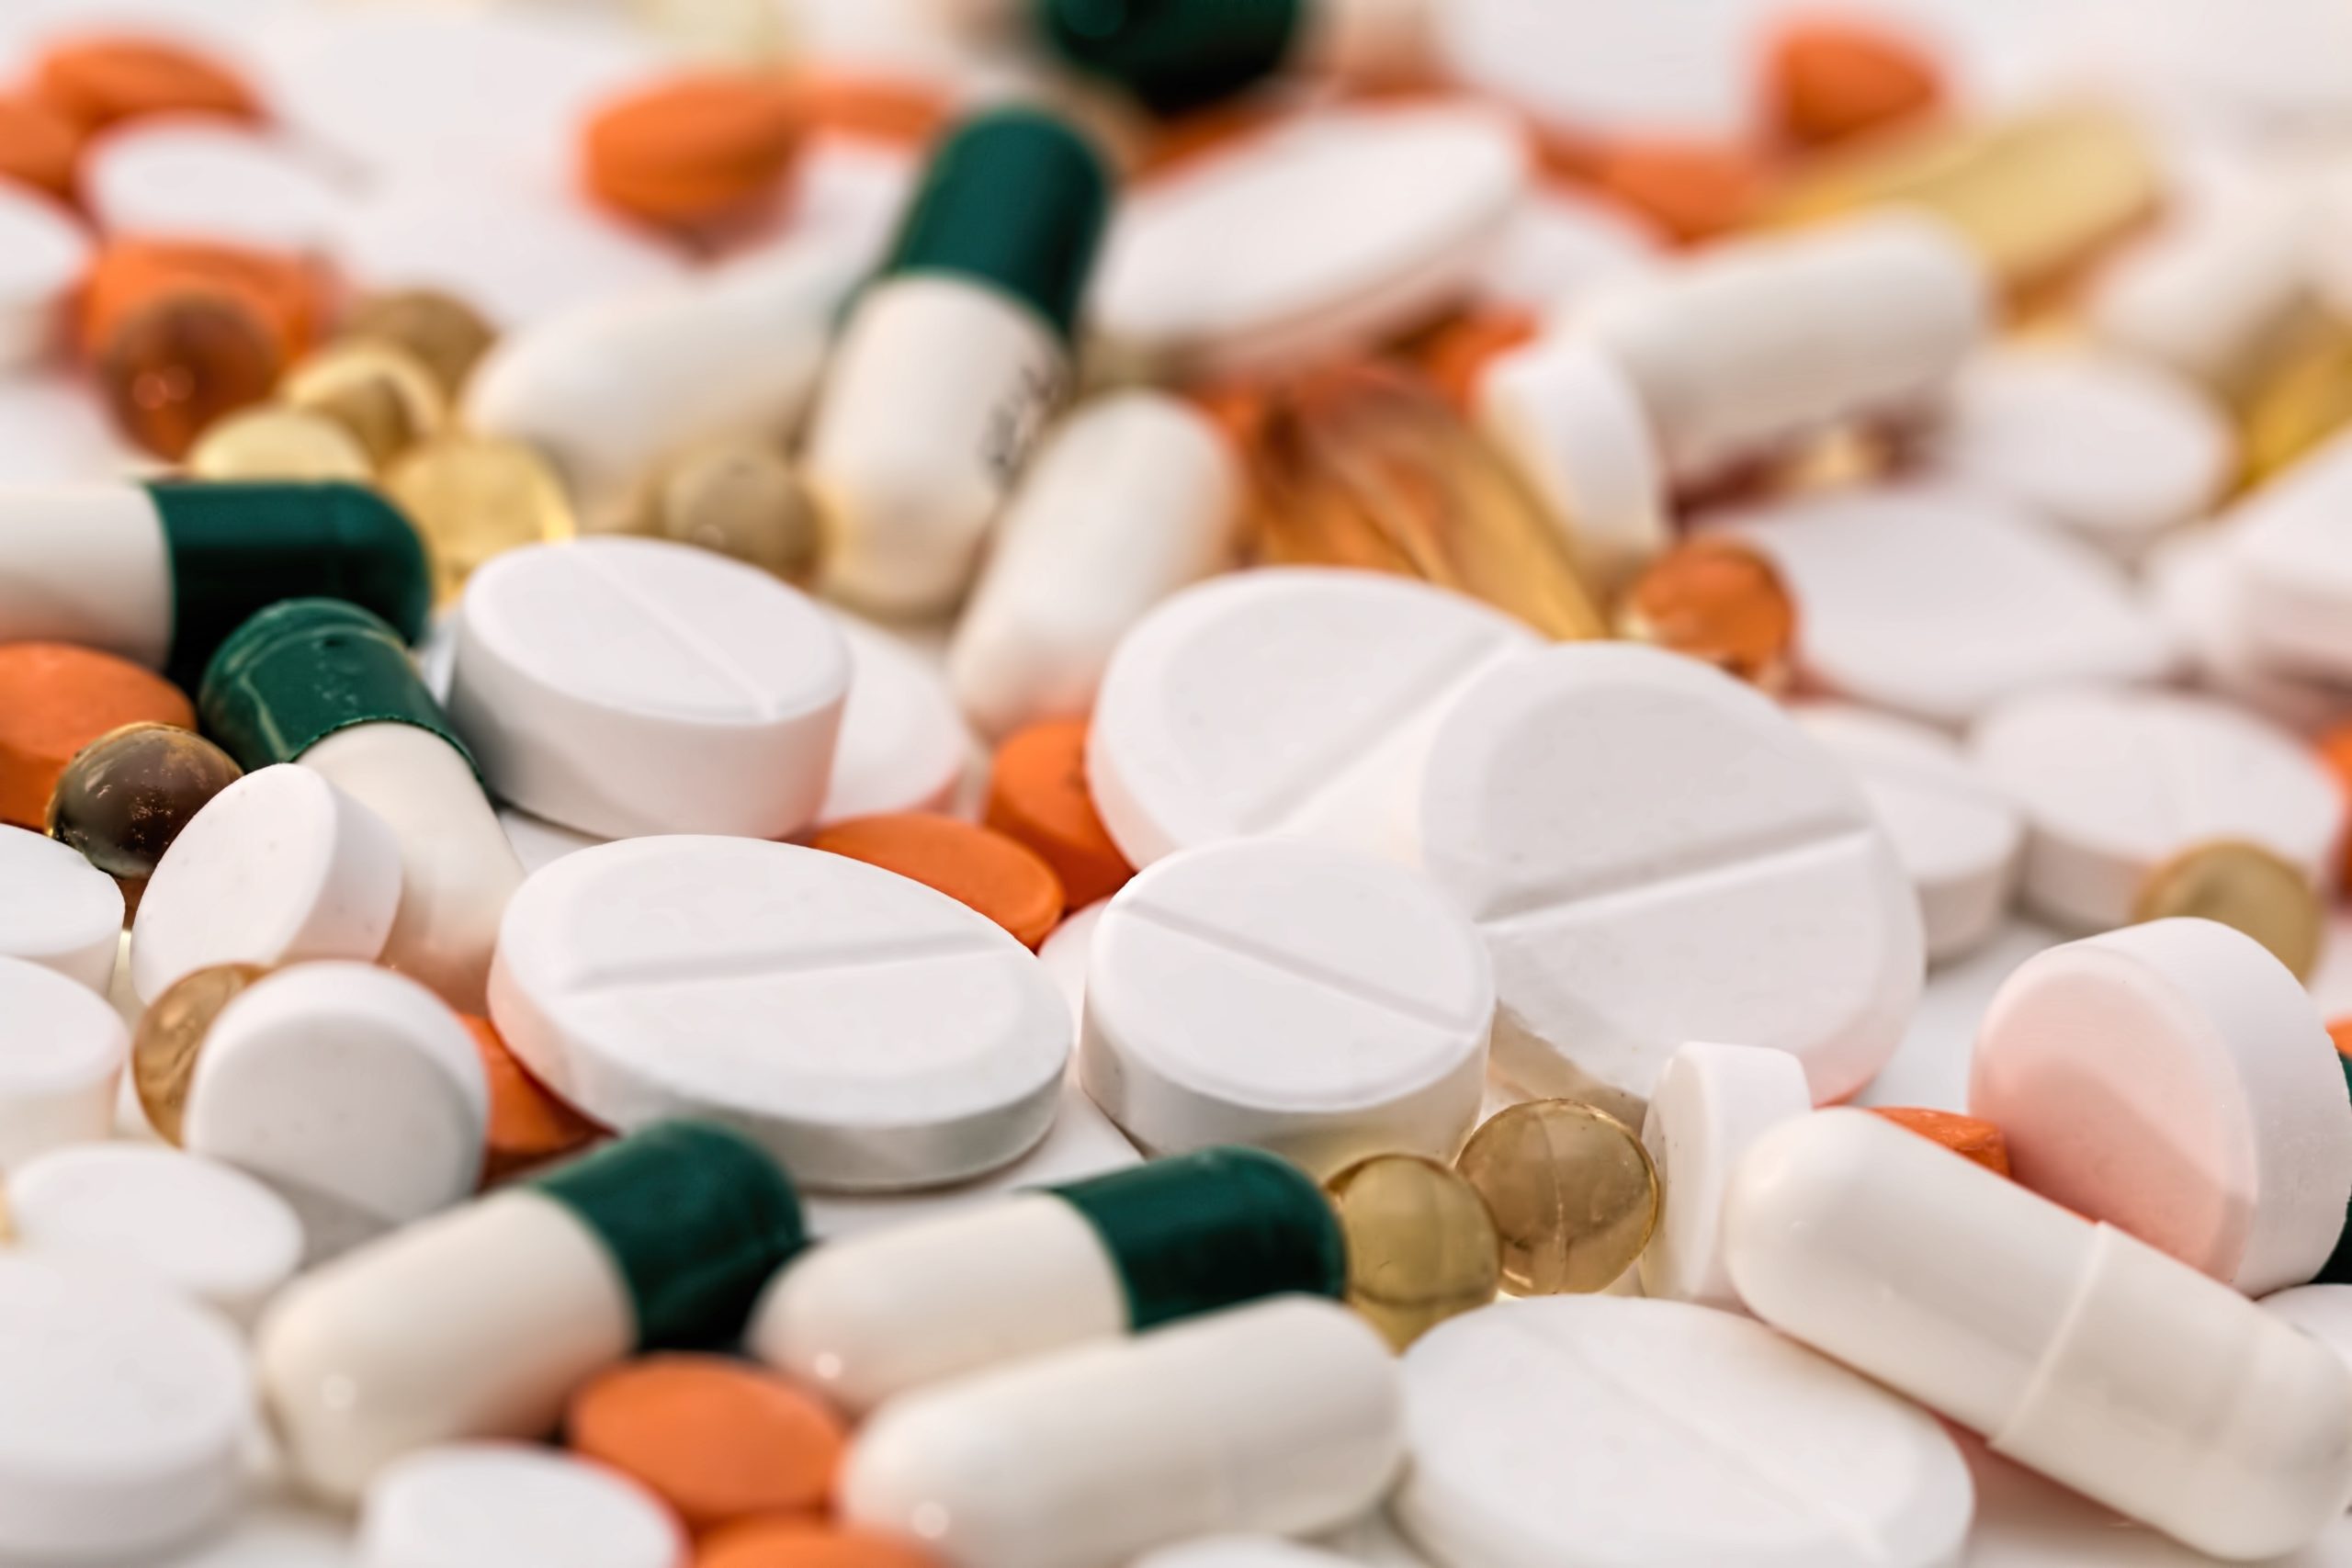 Hashimoto disease medicationsbunch of white oval medication tablets and white medication